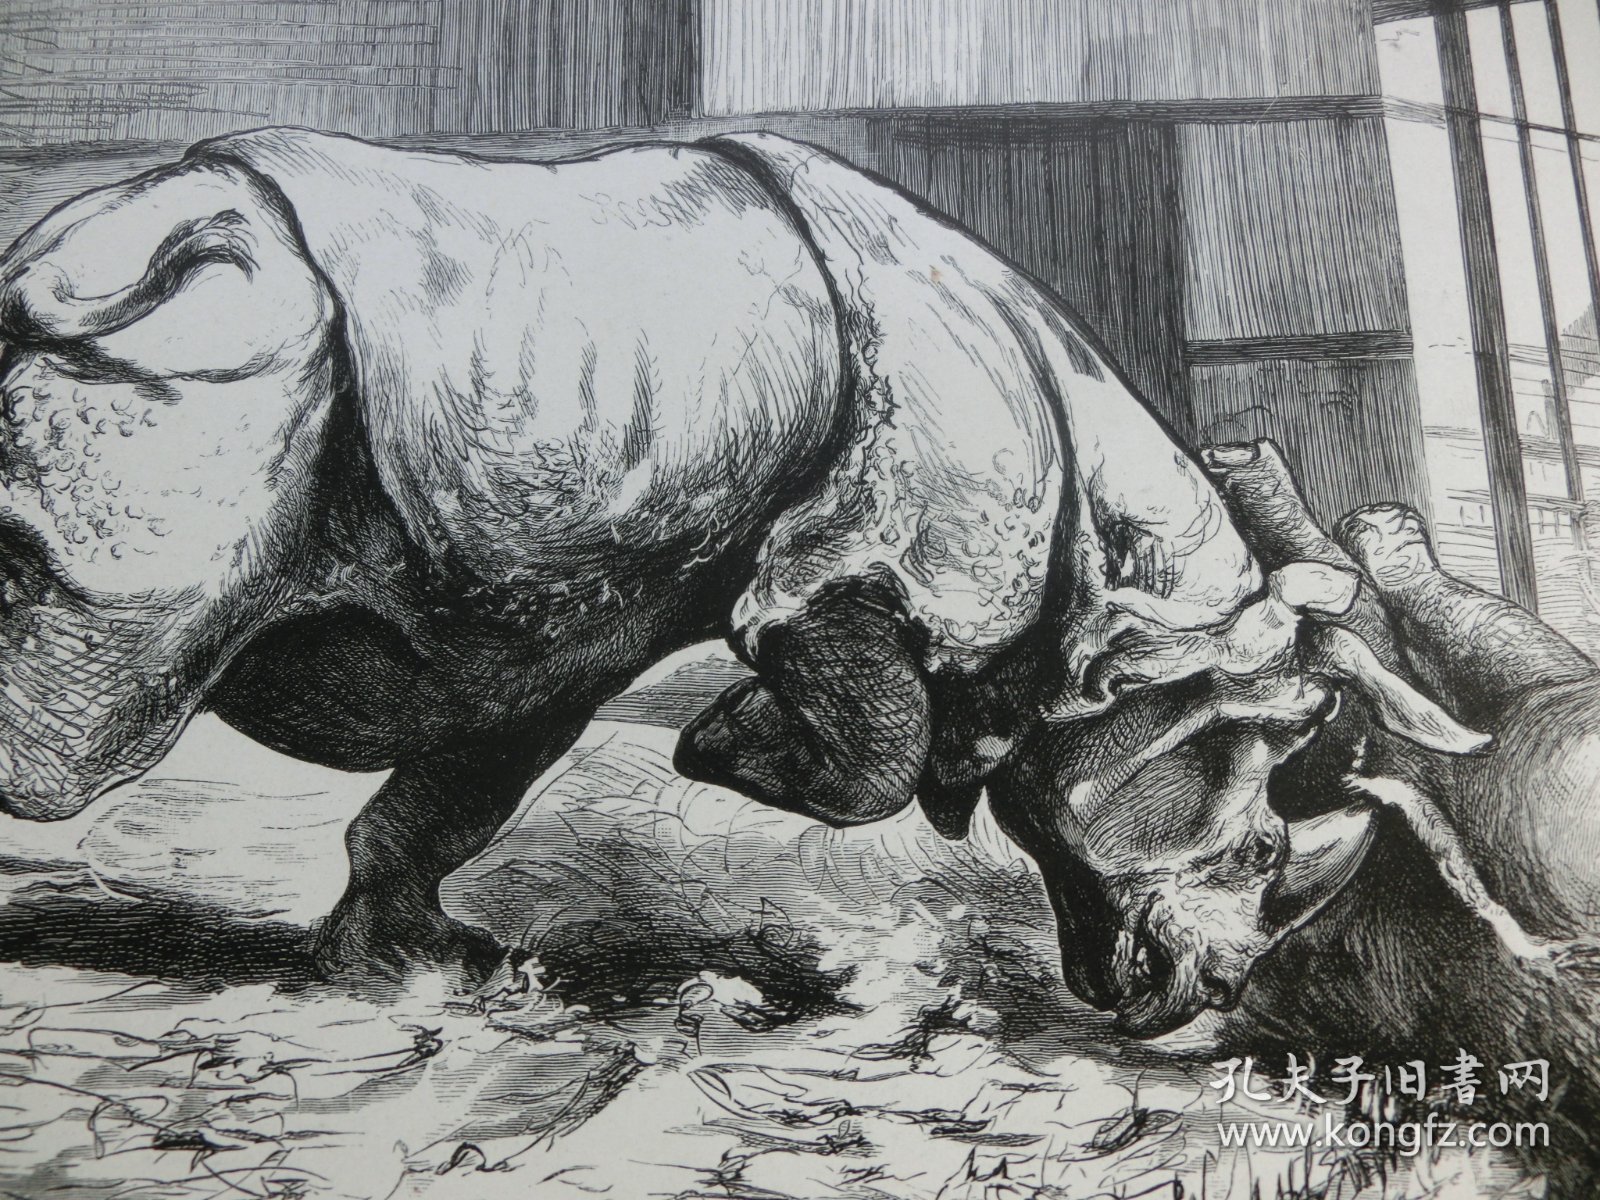 【百元包邮】《王者的决斗》（Ein Rhinoceroskampf im Zoologischen Garten zu Berlin） 1882年，木刻版画， 纸张尺寸约41×28厘米。出自19世纪德国著名动物画家，保罗·弗里德里希·梅耶海姆（Paul Friedrich Meyerheim，1842-1915）的原创木刻作品